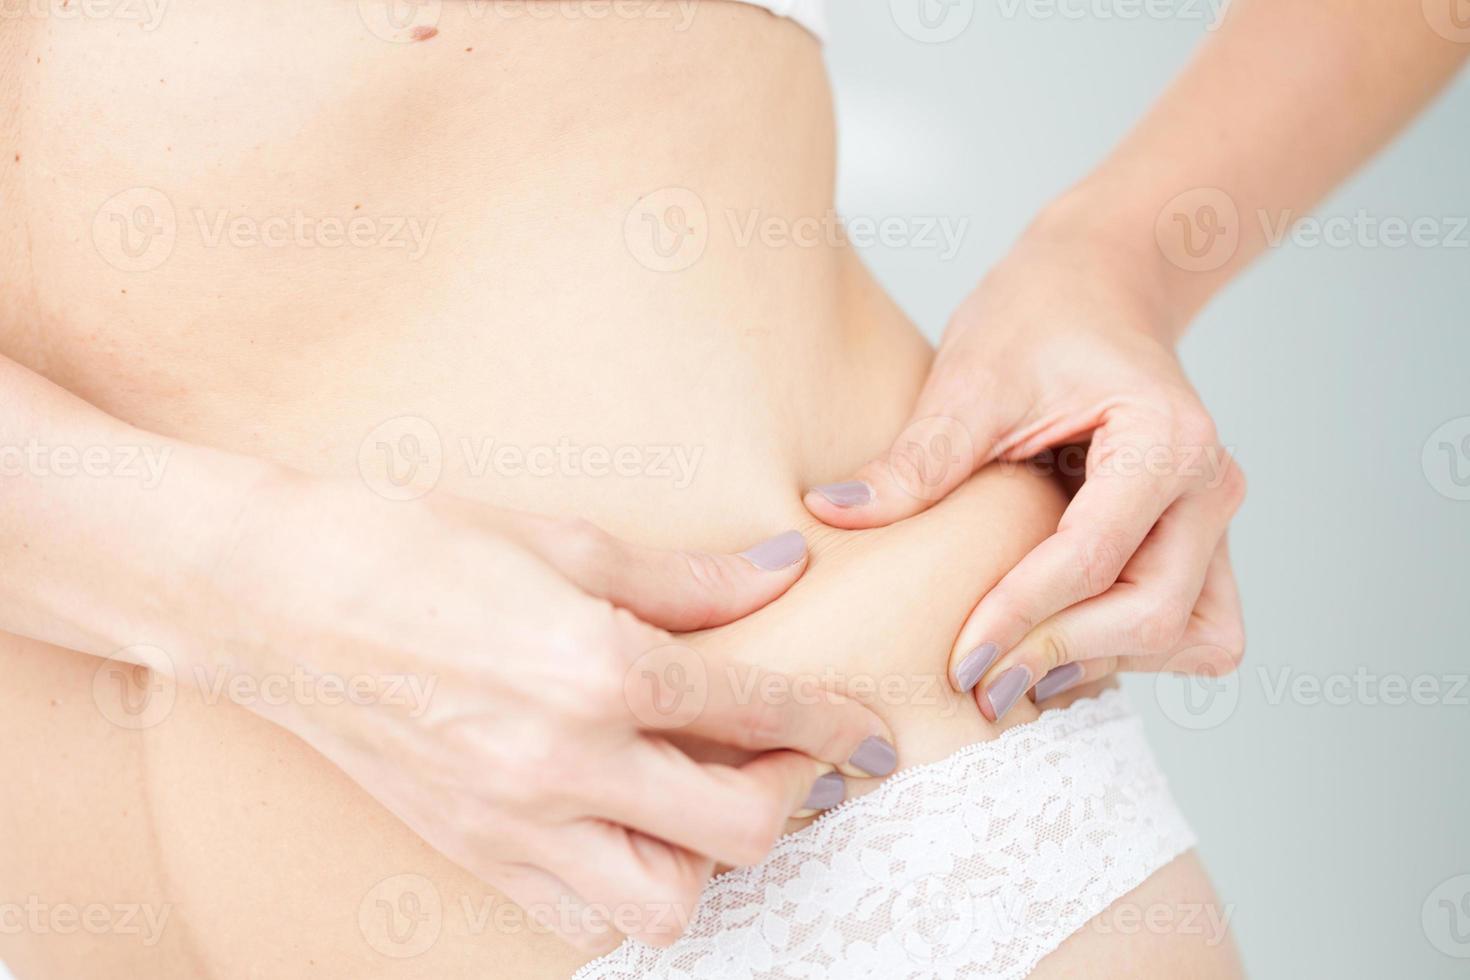 localizado grasa en mujer abdomen foto